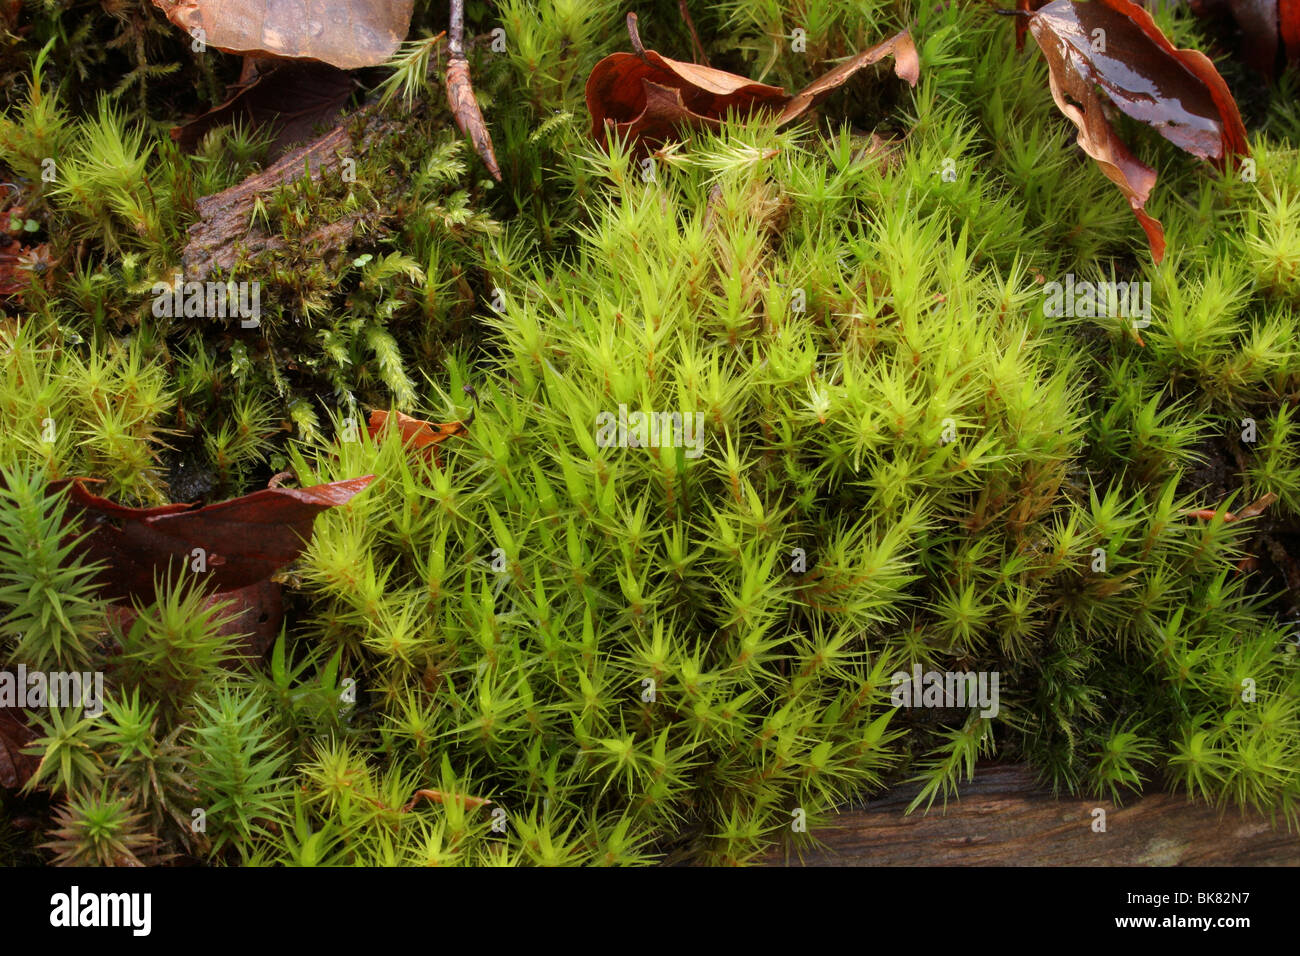 Broom fork-moss (Dicranum scoparium) a Bryophyte moss on a rotten log, UK. Stock Photo